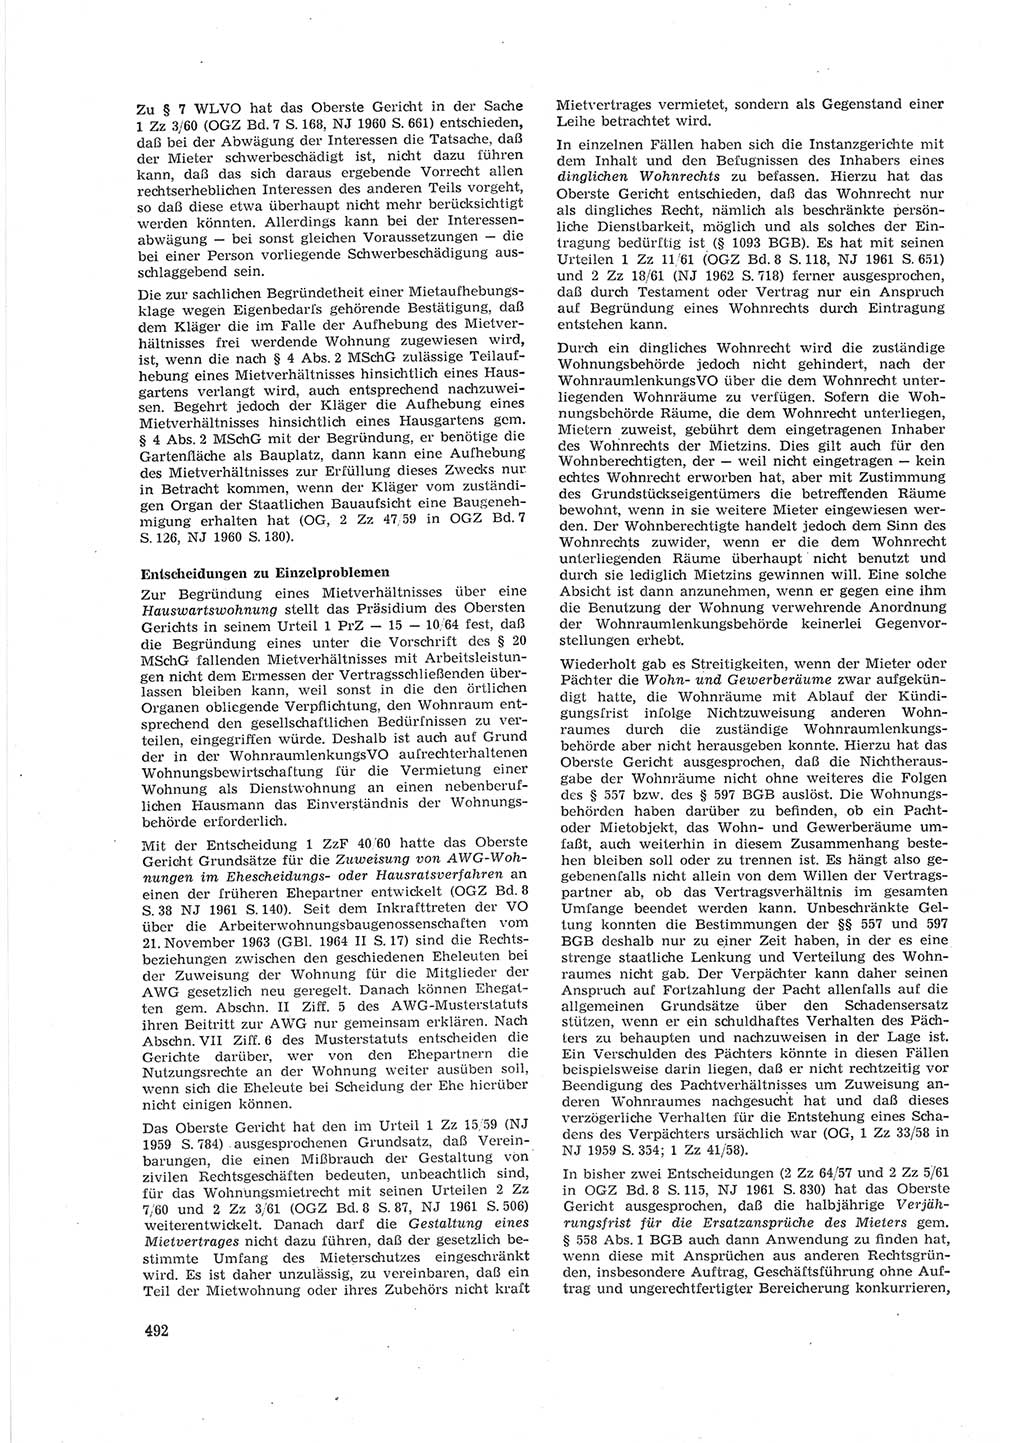 Neue Justiz (NJ), Zeitschrift für Recht und Rechtswissenschaft [Deutsche Demokratische Republik (DDR)], 18. Jahrgang 1964, Seite 492 (NJ DDR 1964, S. 492)